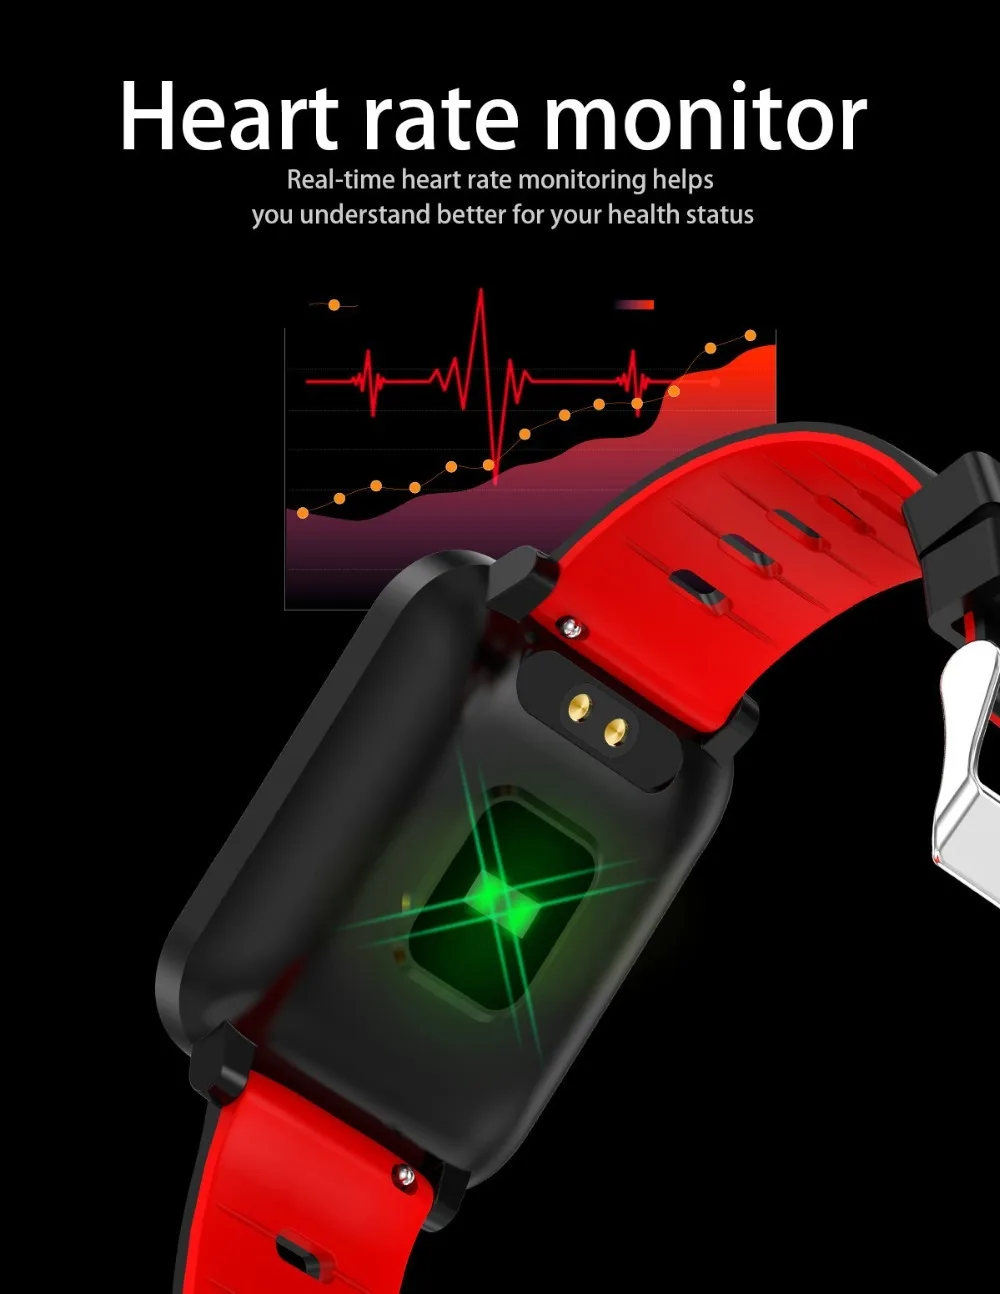 K10 Смарт-часы спортивные Ip68 Водонепроницаемые браслеты пульсометр кровяное давление фитнес-трекер часы Смарт-браслет для Mi Band 3